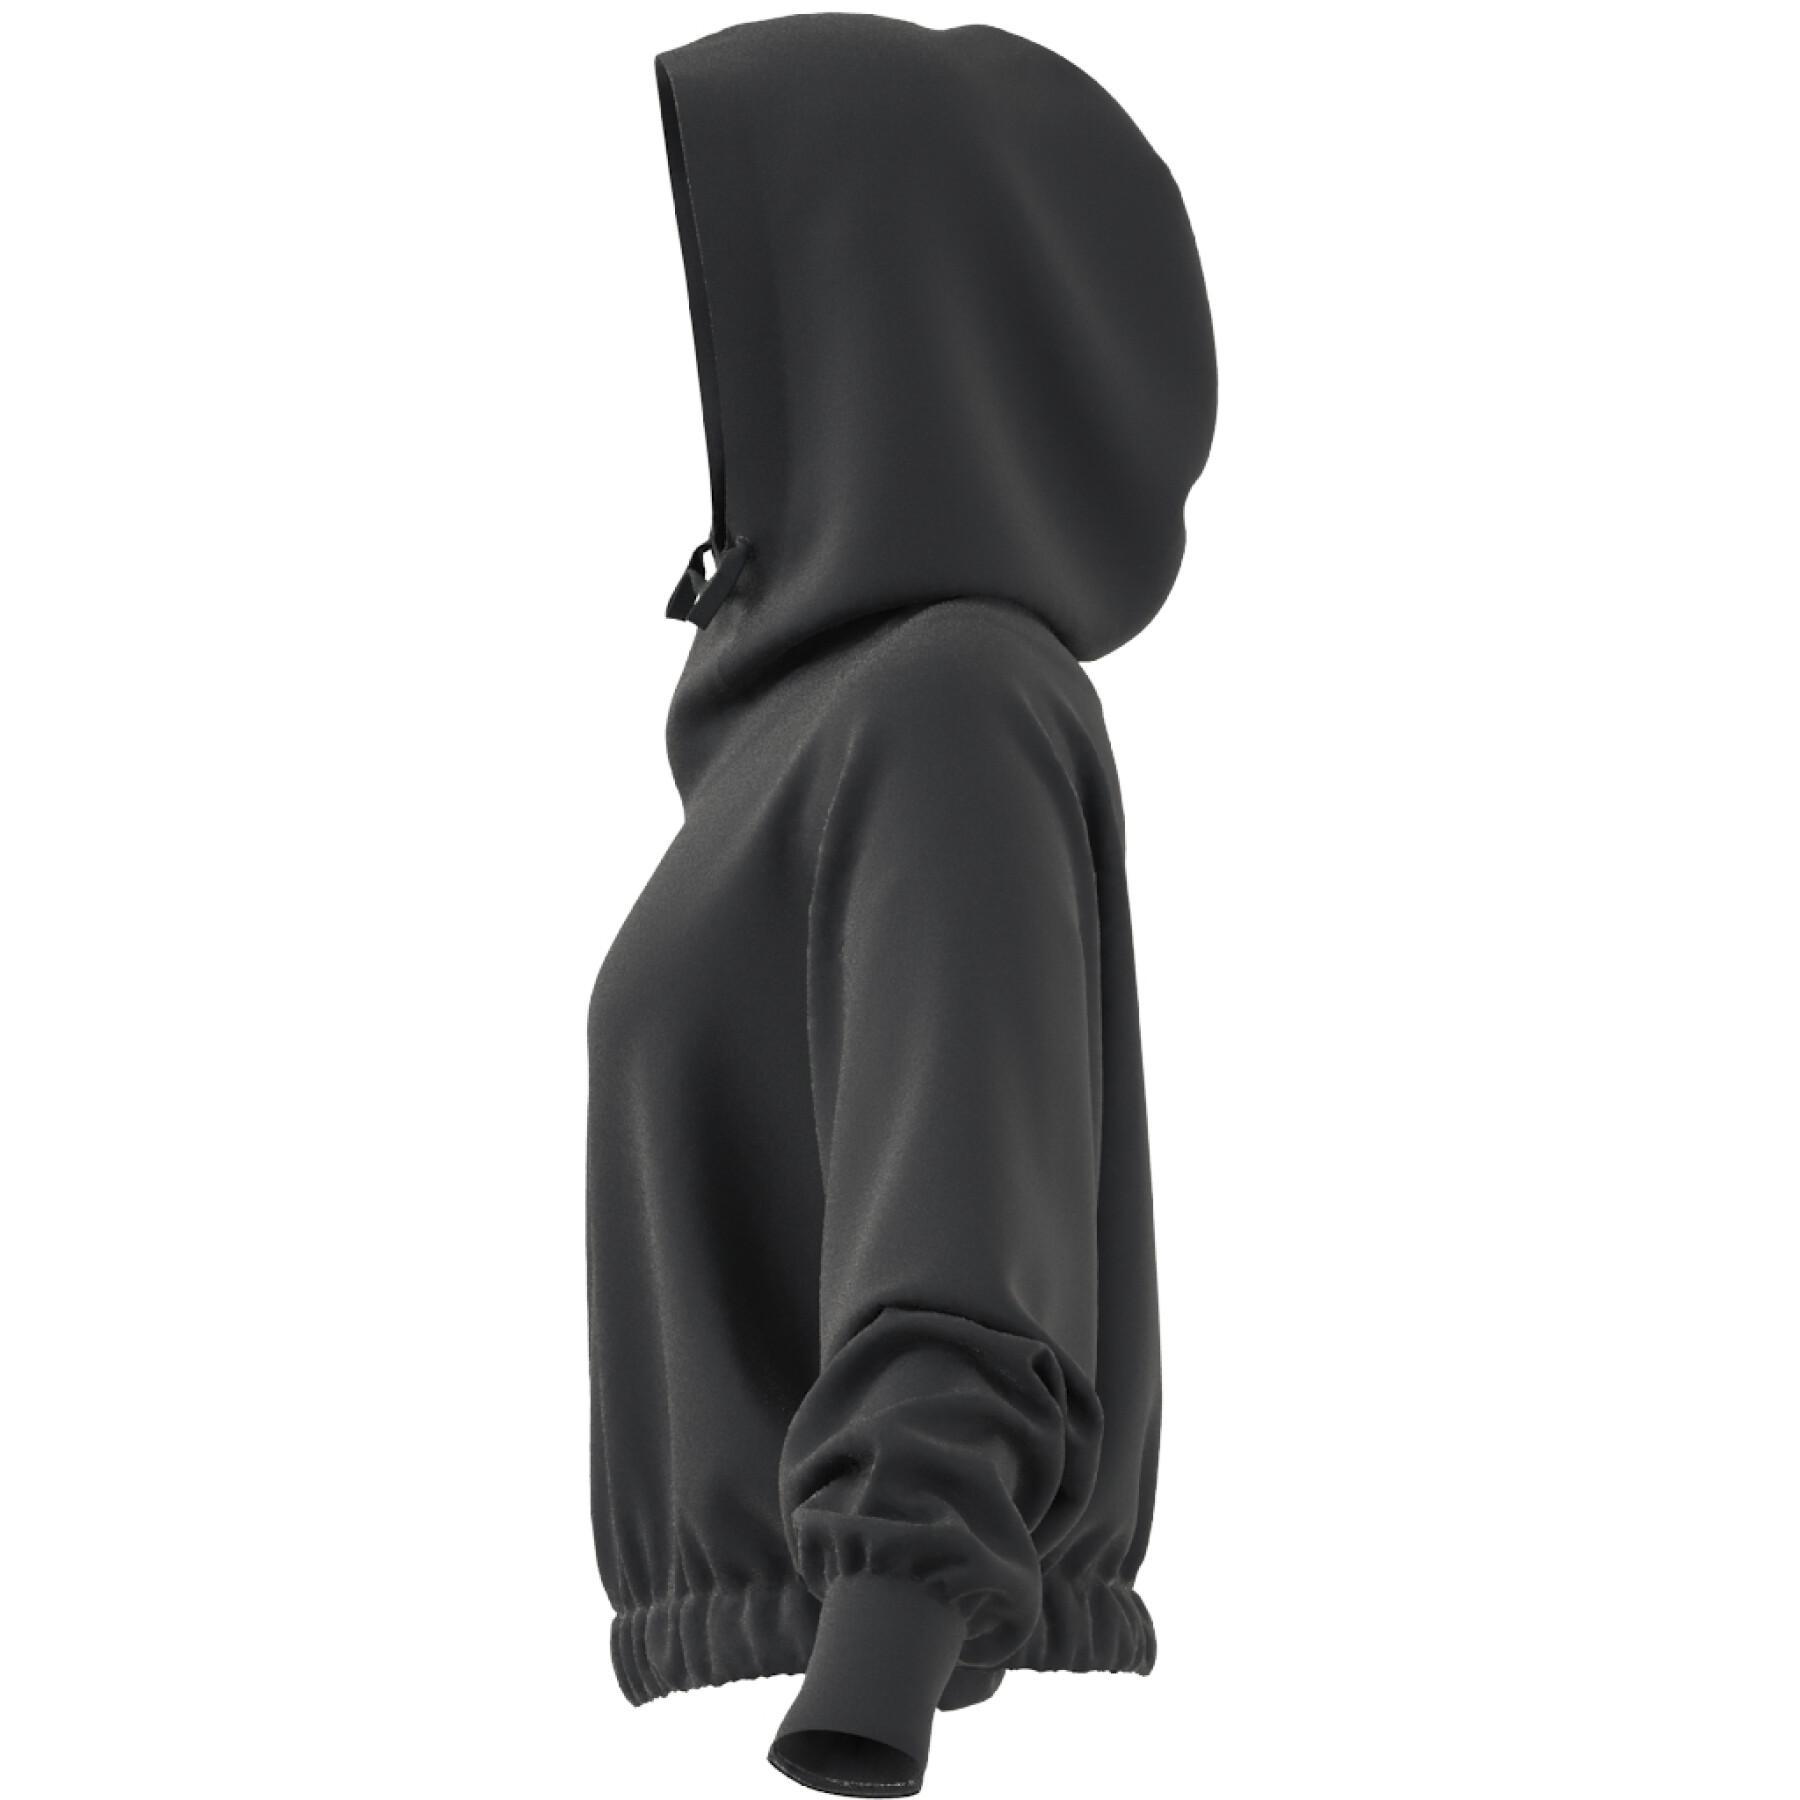 Women's short hooded sweatshirt adidas Studio Lounge